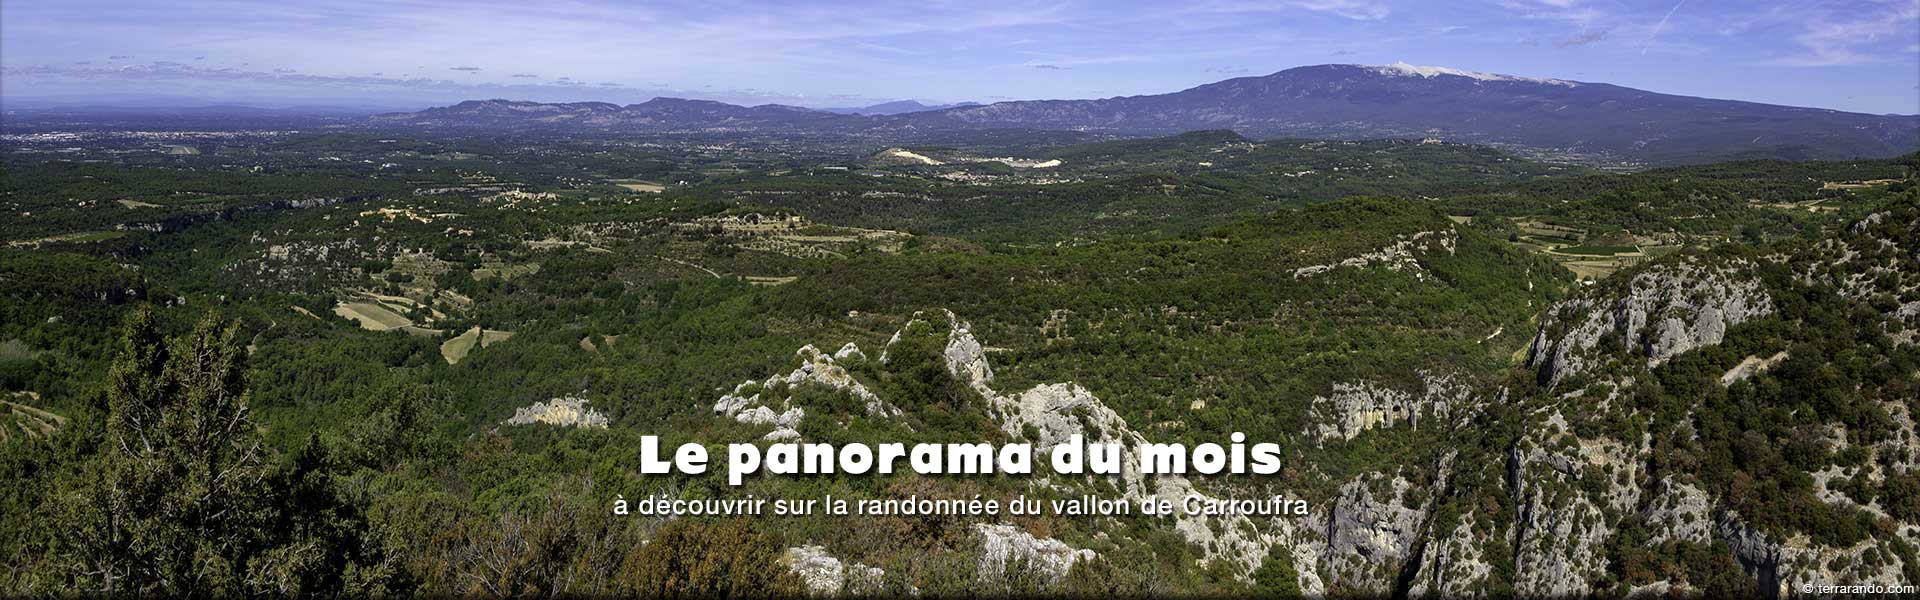 Panorama à découvrir sur la randonnée du vallon de Carroufra